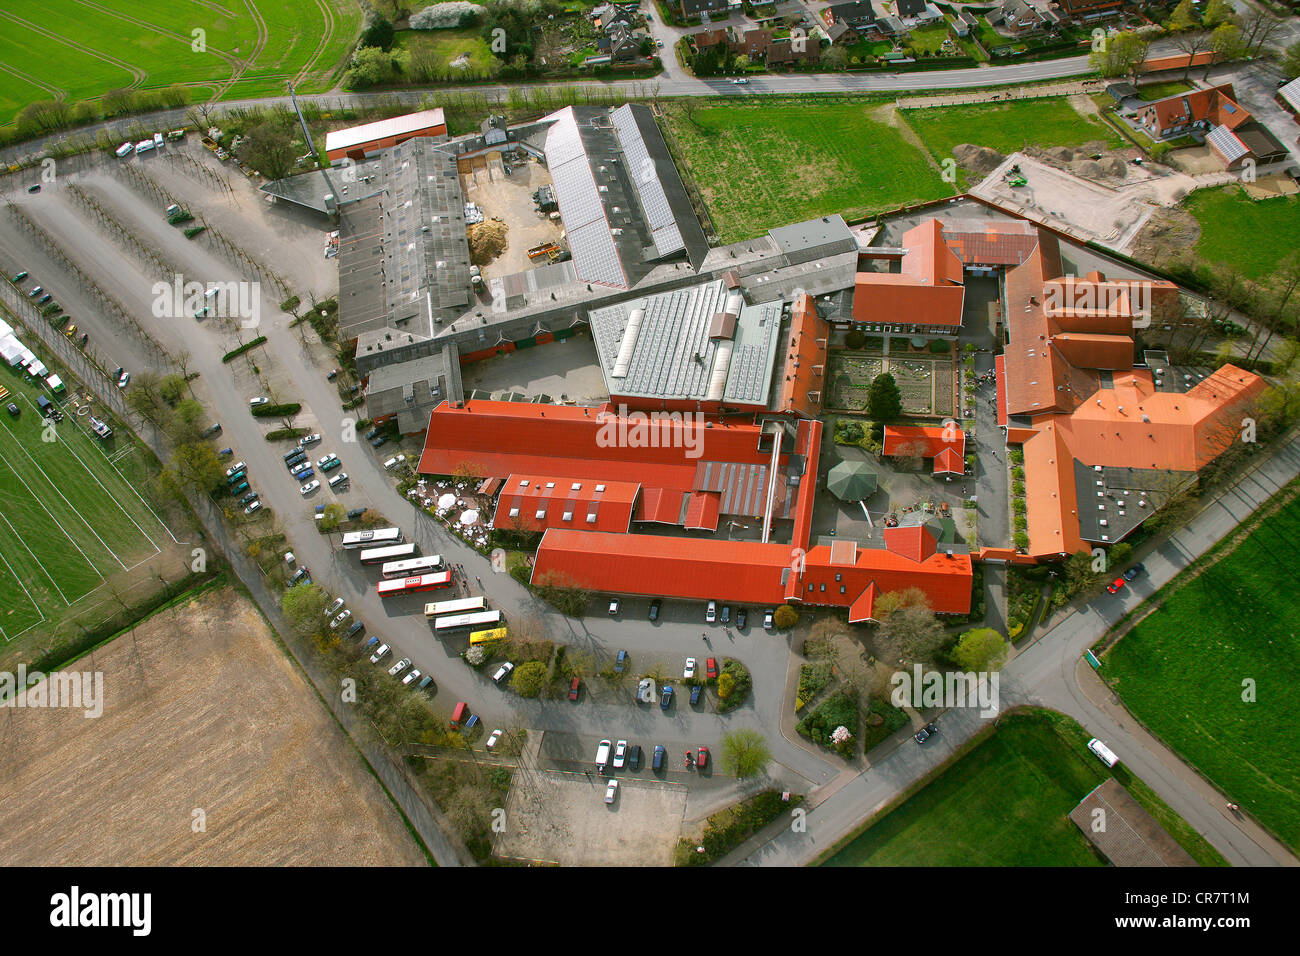 Vue aérienne, de l'Ewald ferme, restaurant à thème, Haltern am See, région de la Ruhr, Nordrhein-Westfalen, Germany, Europe Banque D'Images